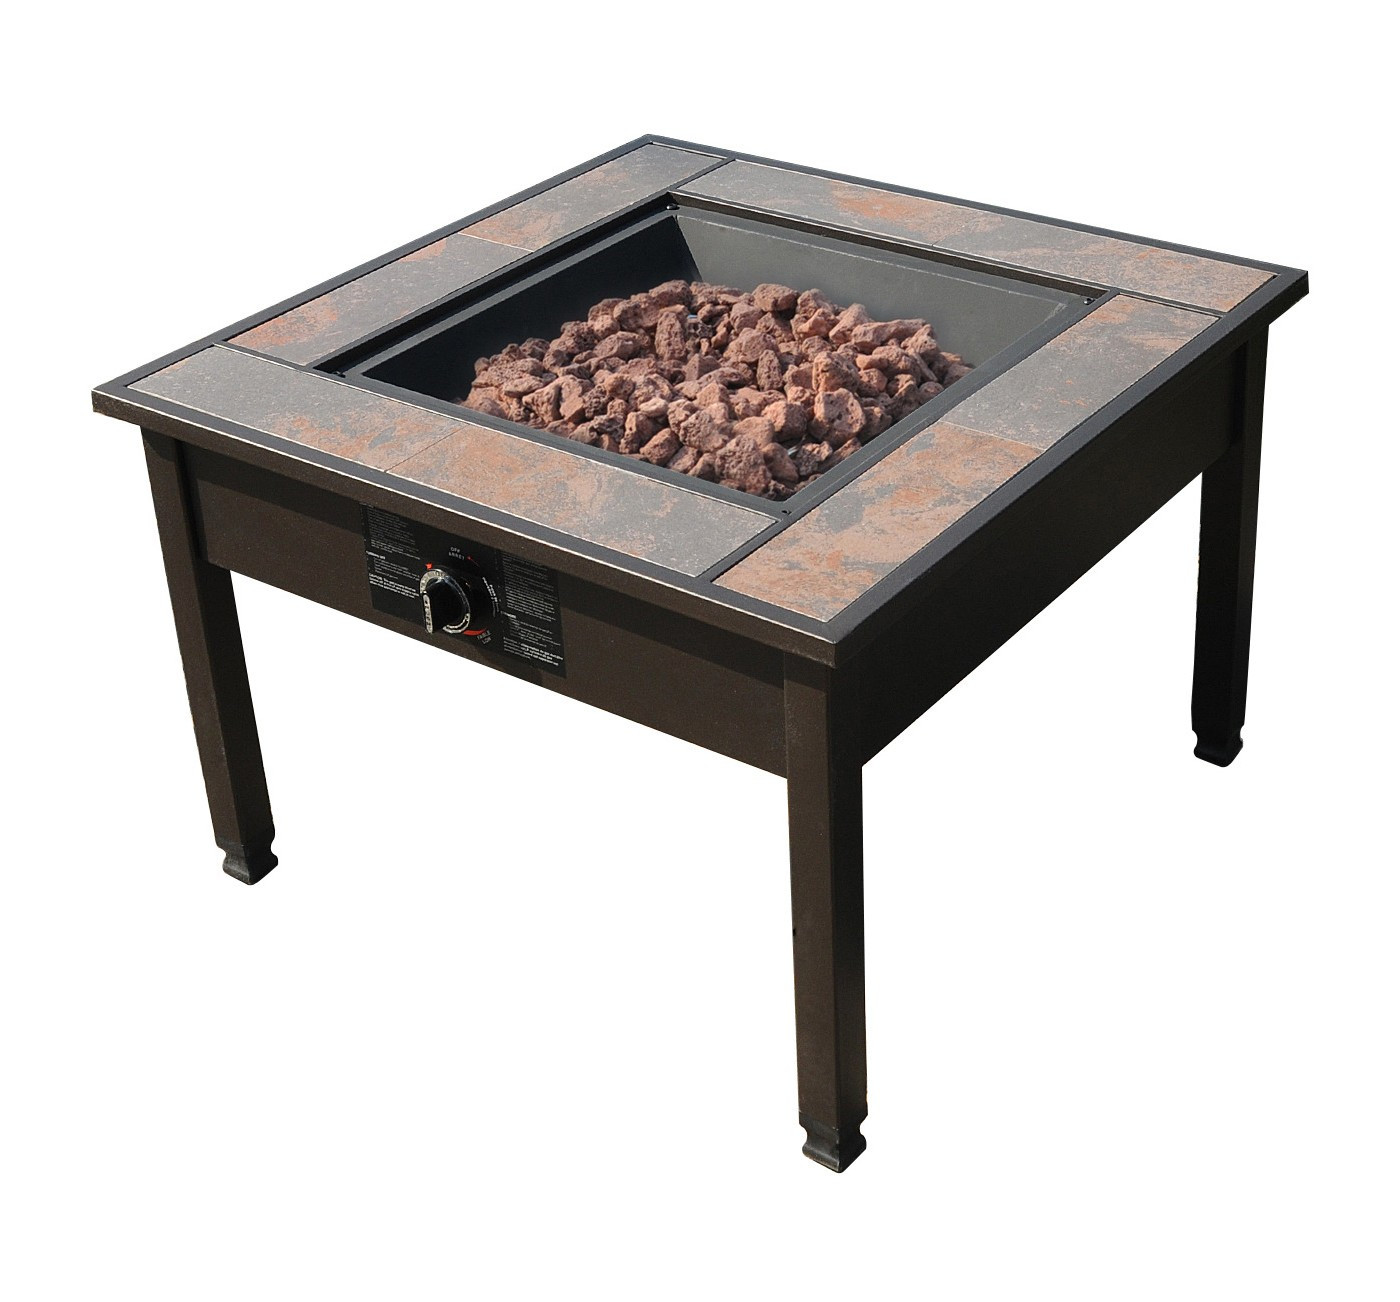 Ceramic Tile Fire Pit
 Tar 30" Ceramic Tile Table Top LP Gas Fire Pit $70 49